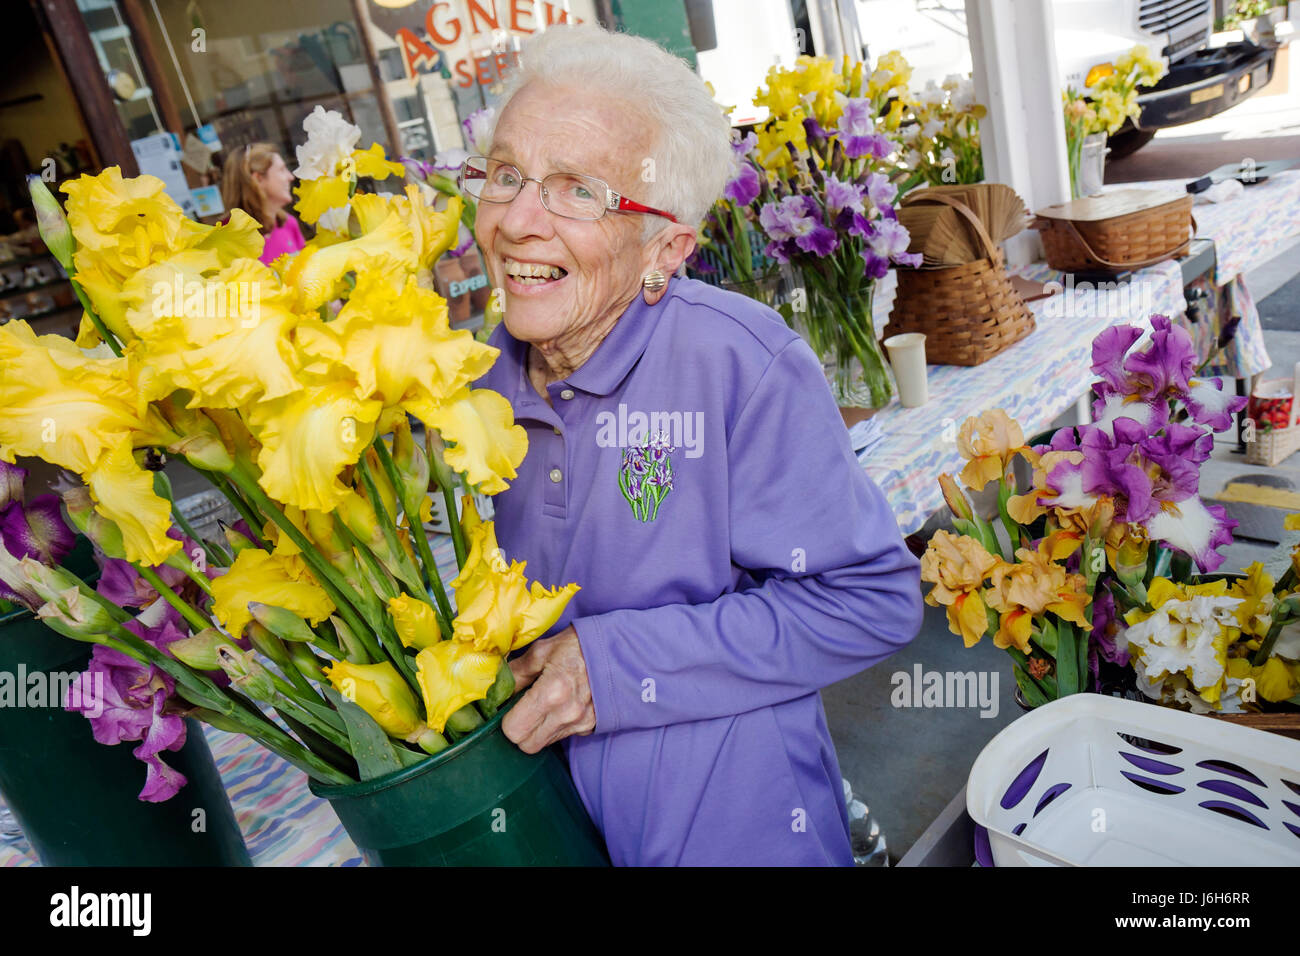 Roanoke Virginia, Market Square, Farmers' Market, donna donna donne, anziani cittadini, attivo, lavoro, lavoro, sorridente, felice, negozio di fiori, floris Foto Stock